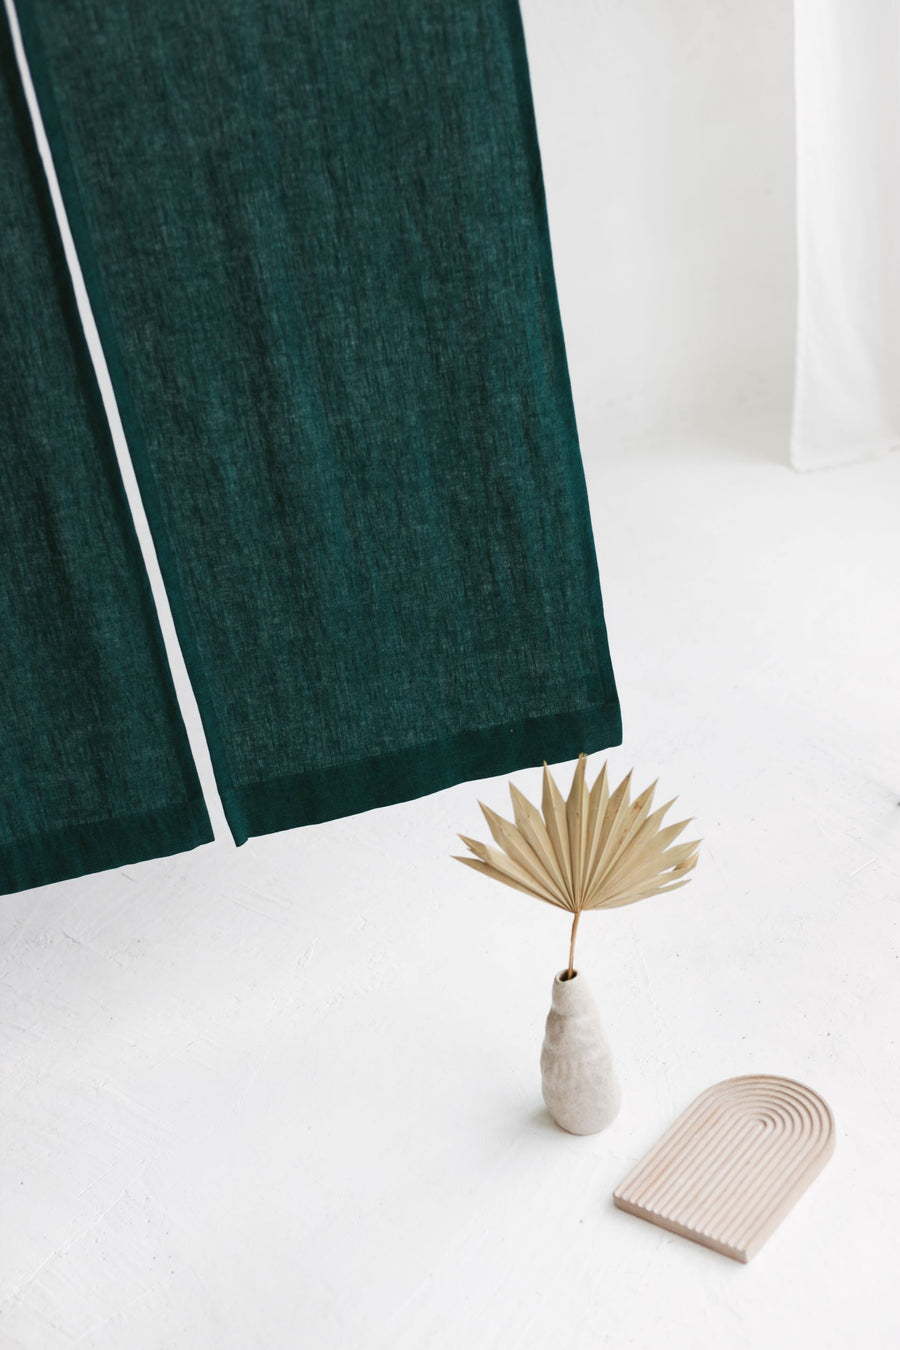 Emerald Linen Japanese Noren Curtain